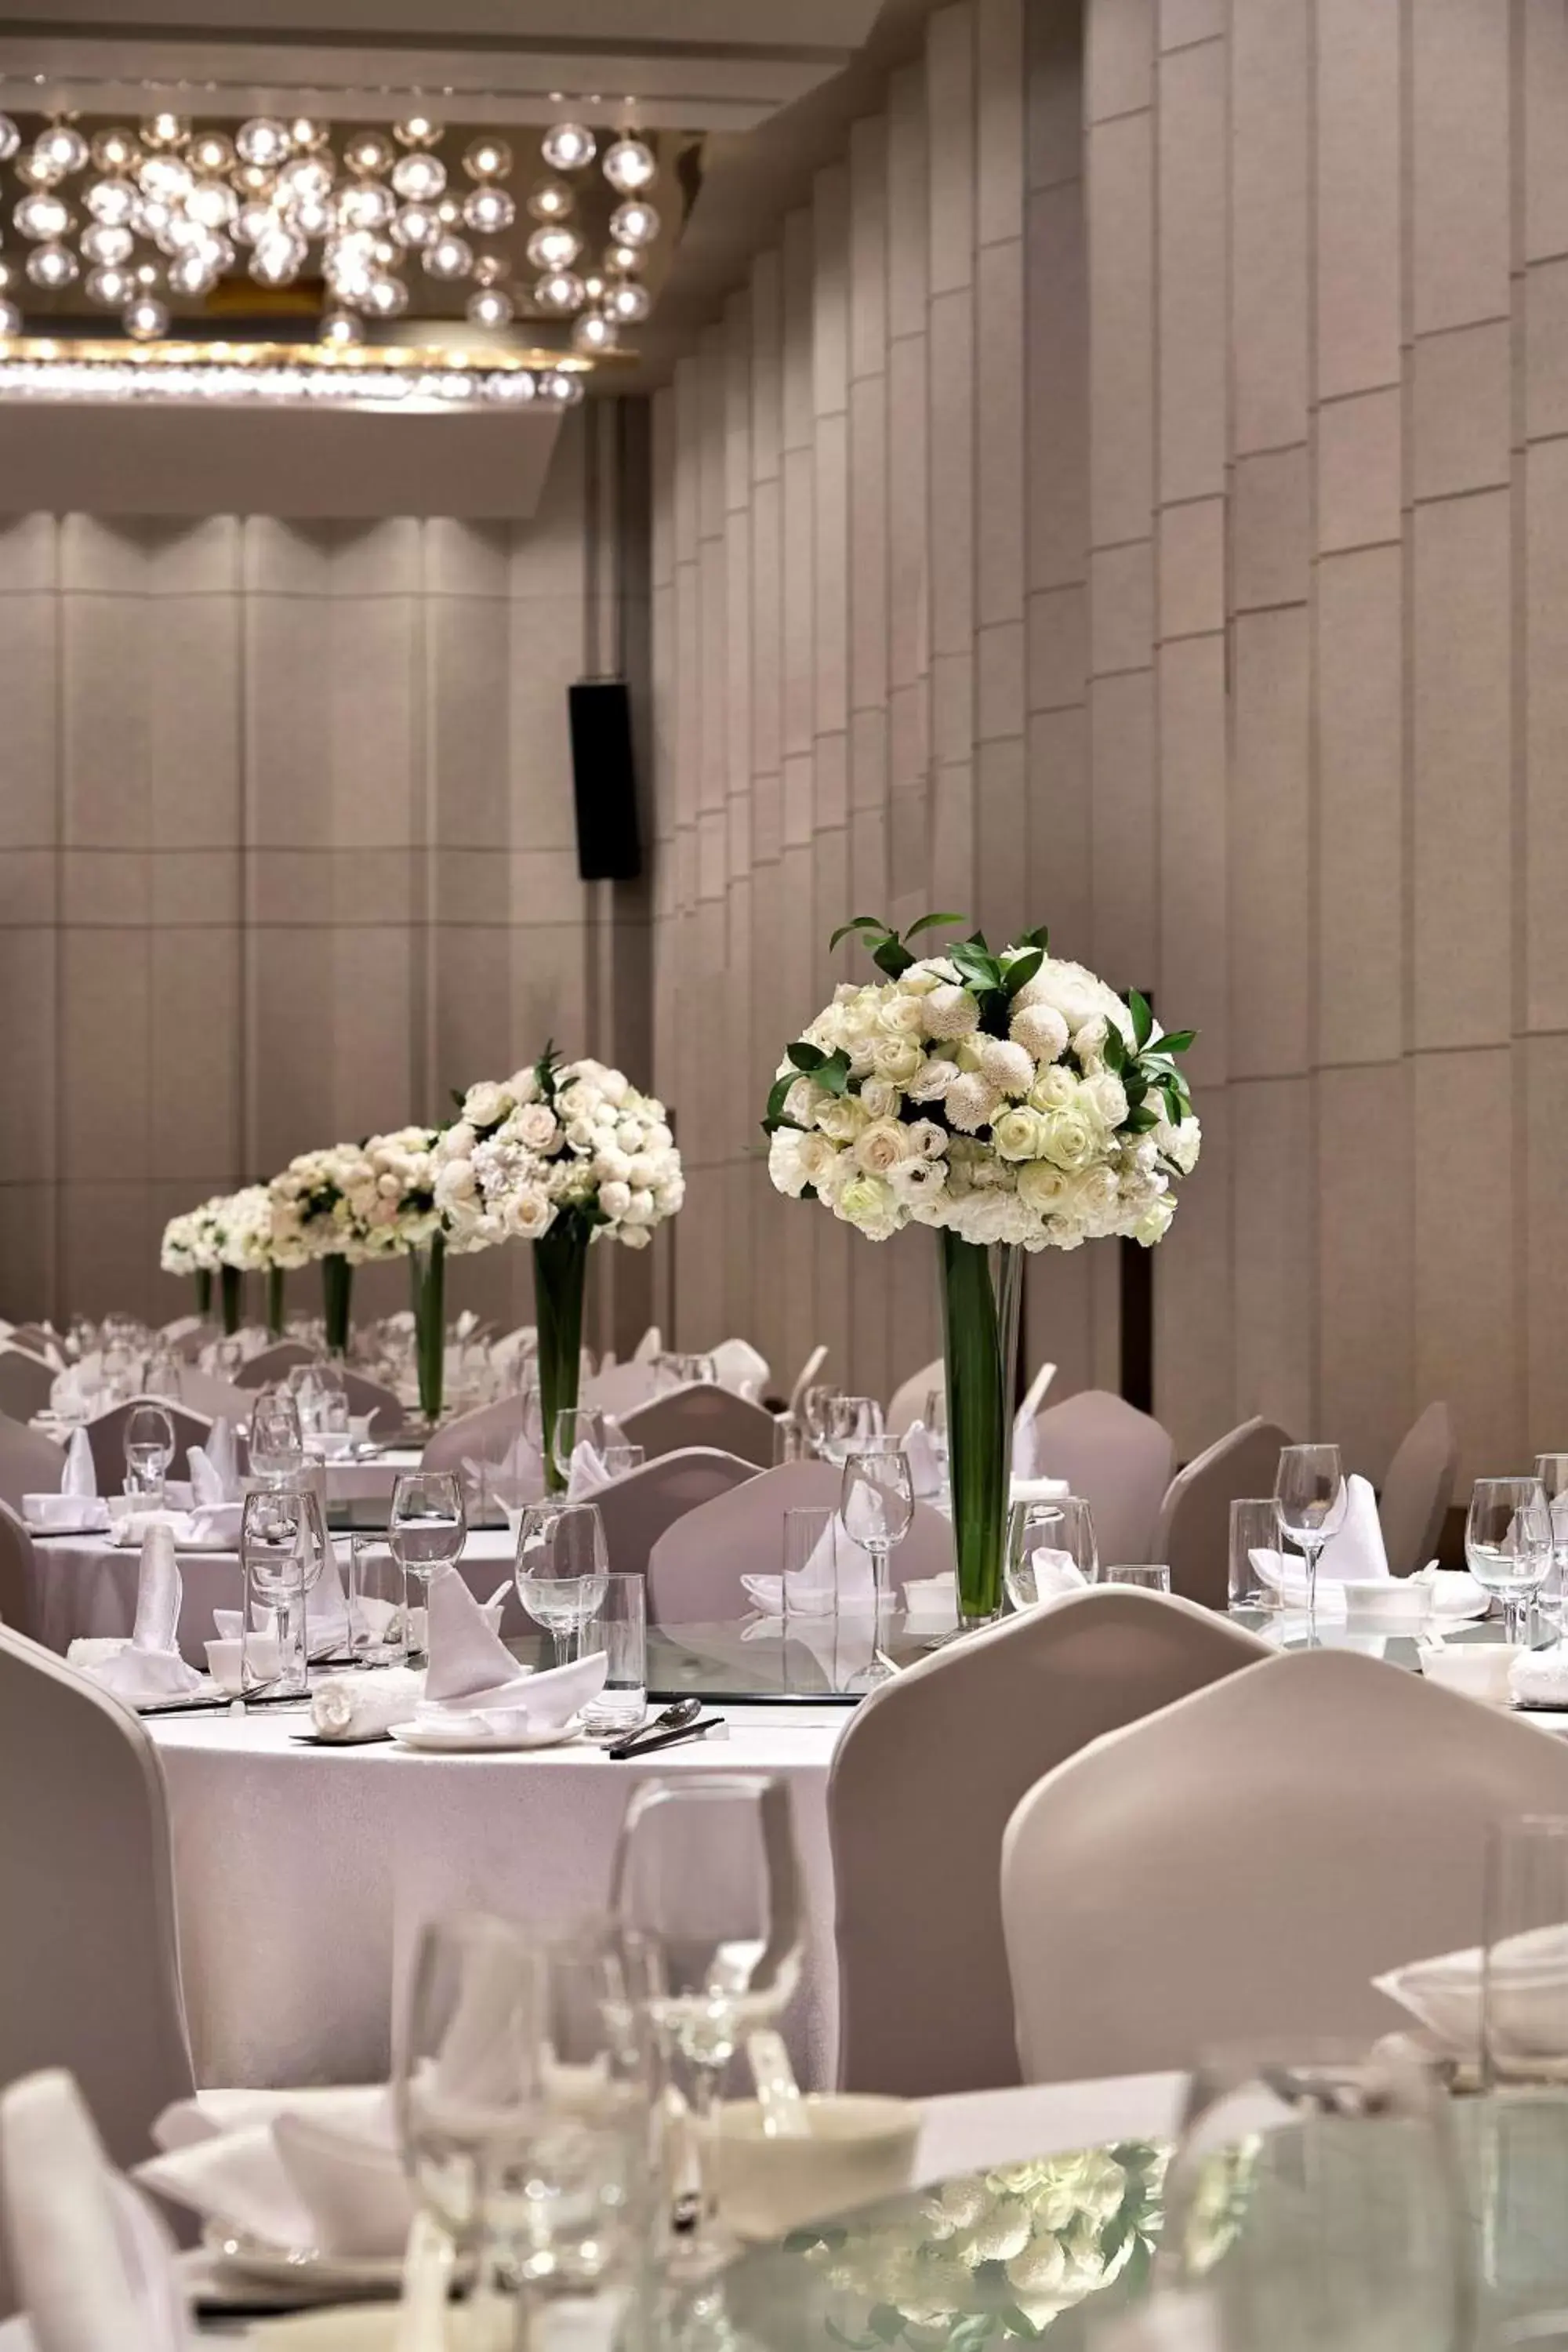 Banquet/Function facilities, Banquet Facilities in Kempinski Hotel Nanjing